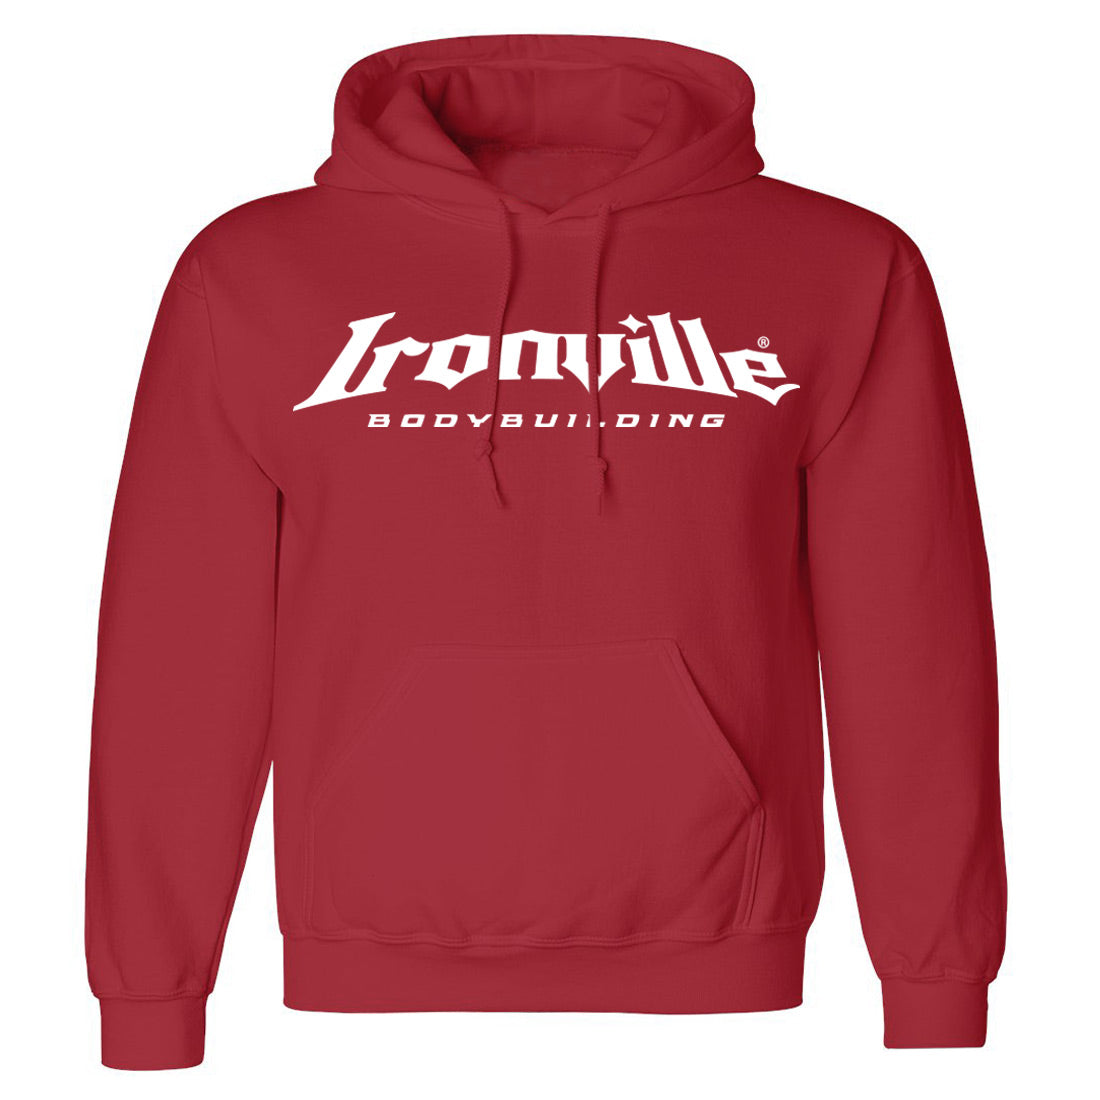 Ironville BODYBUILDING Pullover Hoodie Sweatshirt